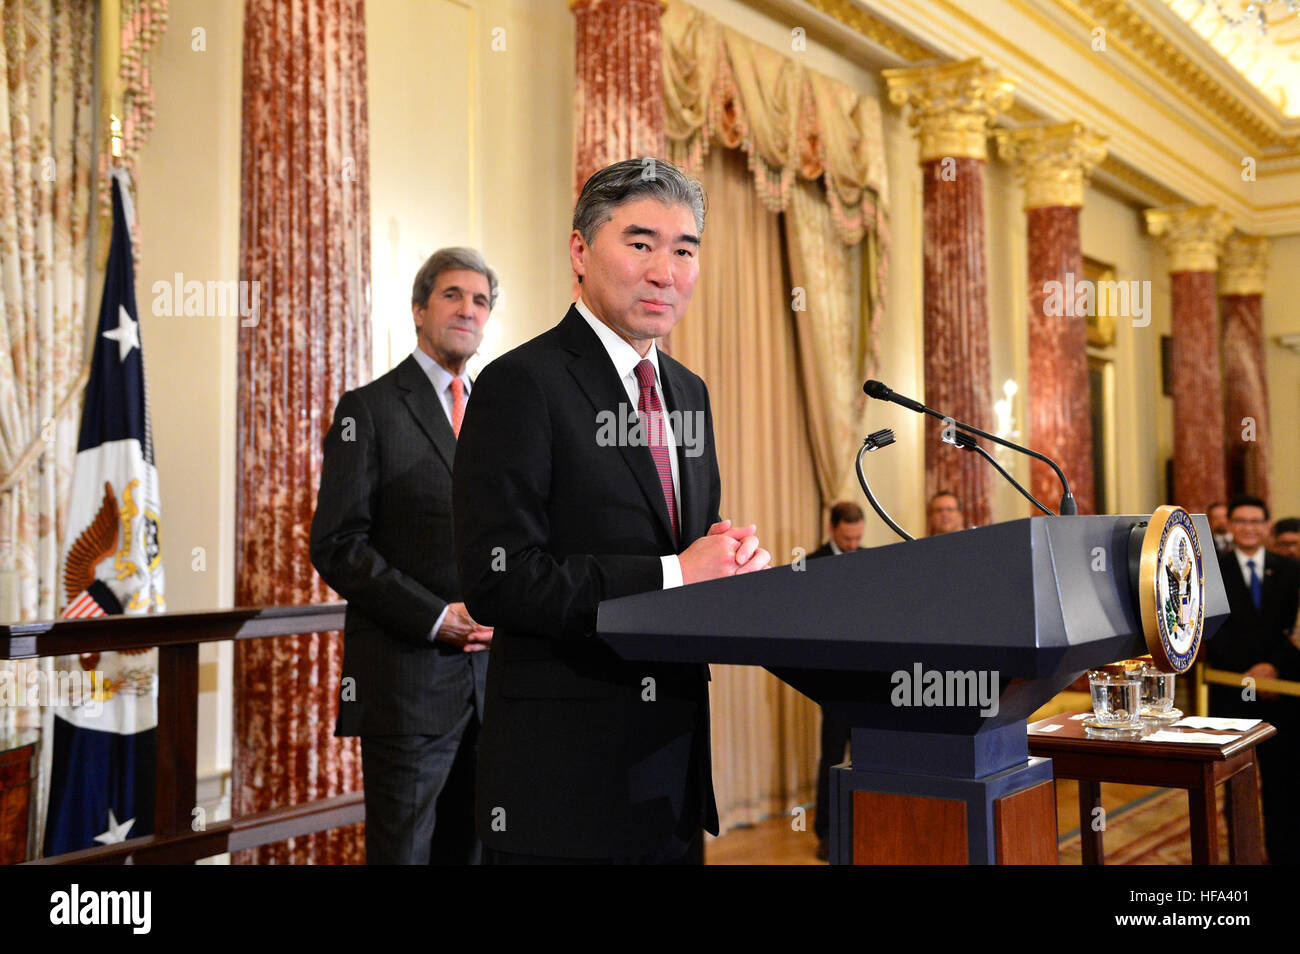 Le secrétaire d'État américain John Kerry à sur, nouvellement assermenté ambassadeur des États-Unis à l'Philippines Sung Kim prononce une allocution lors d'une cérémonie en son honneur au département d'État des États-Unis à Washington, D.C., le 3 novembre 2016. Banque D'Images